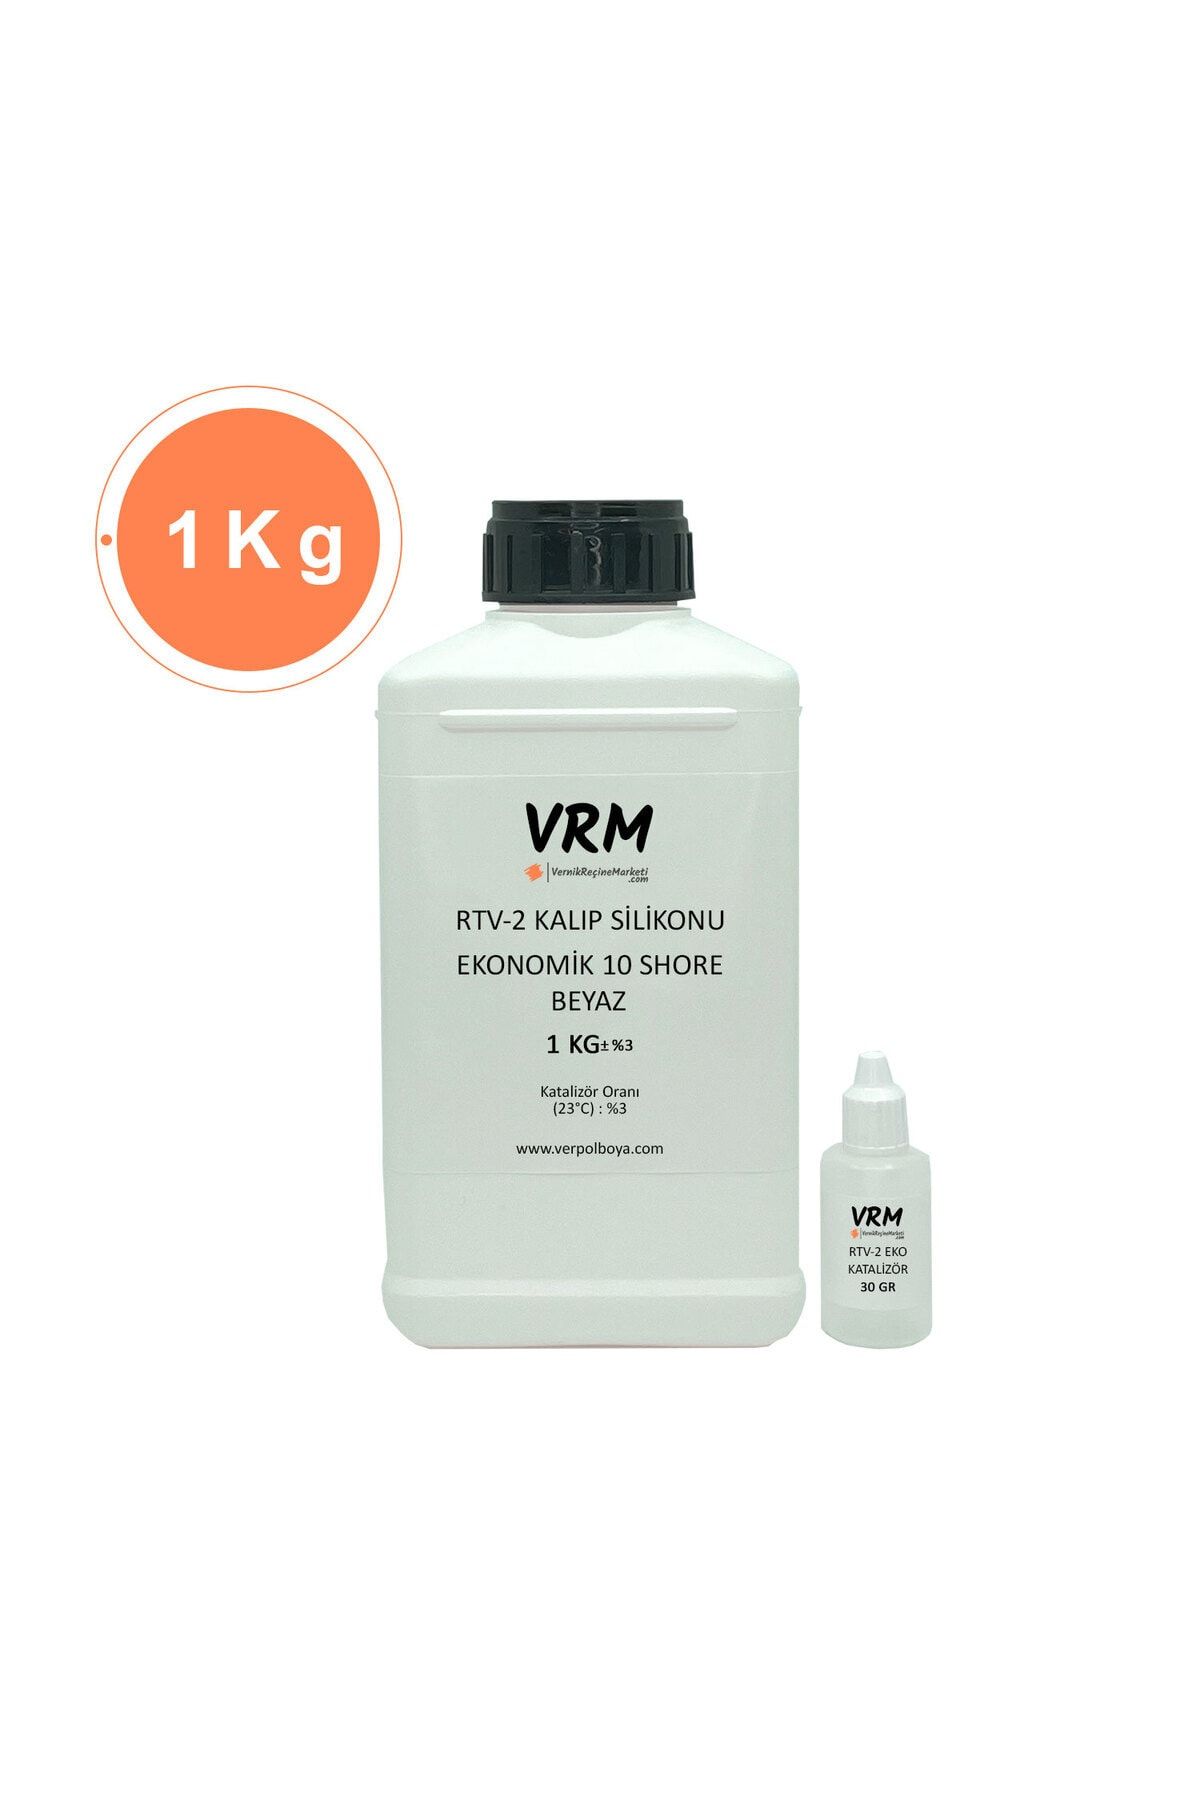 VRM VernikRecineMarketi Rtv-2 Beyaz Kalıp Silikonu (10 SHORE) 1 Kg